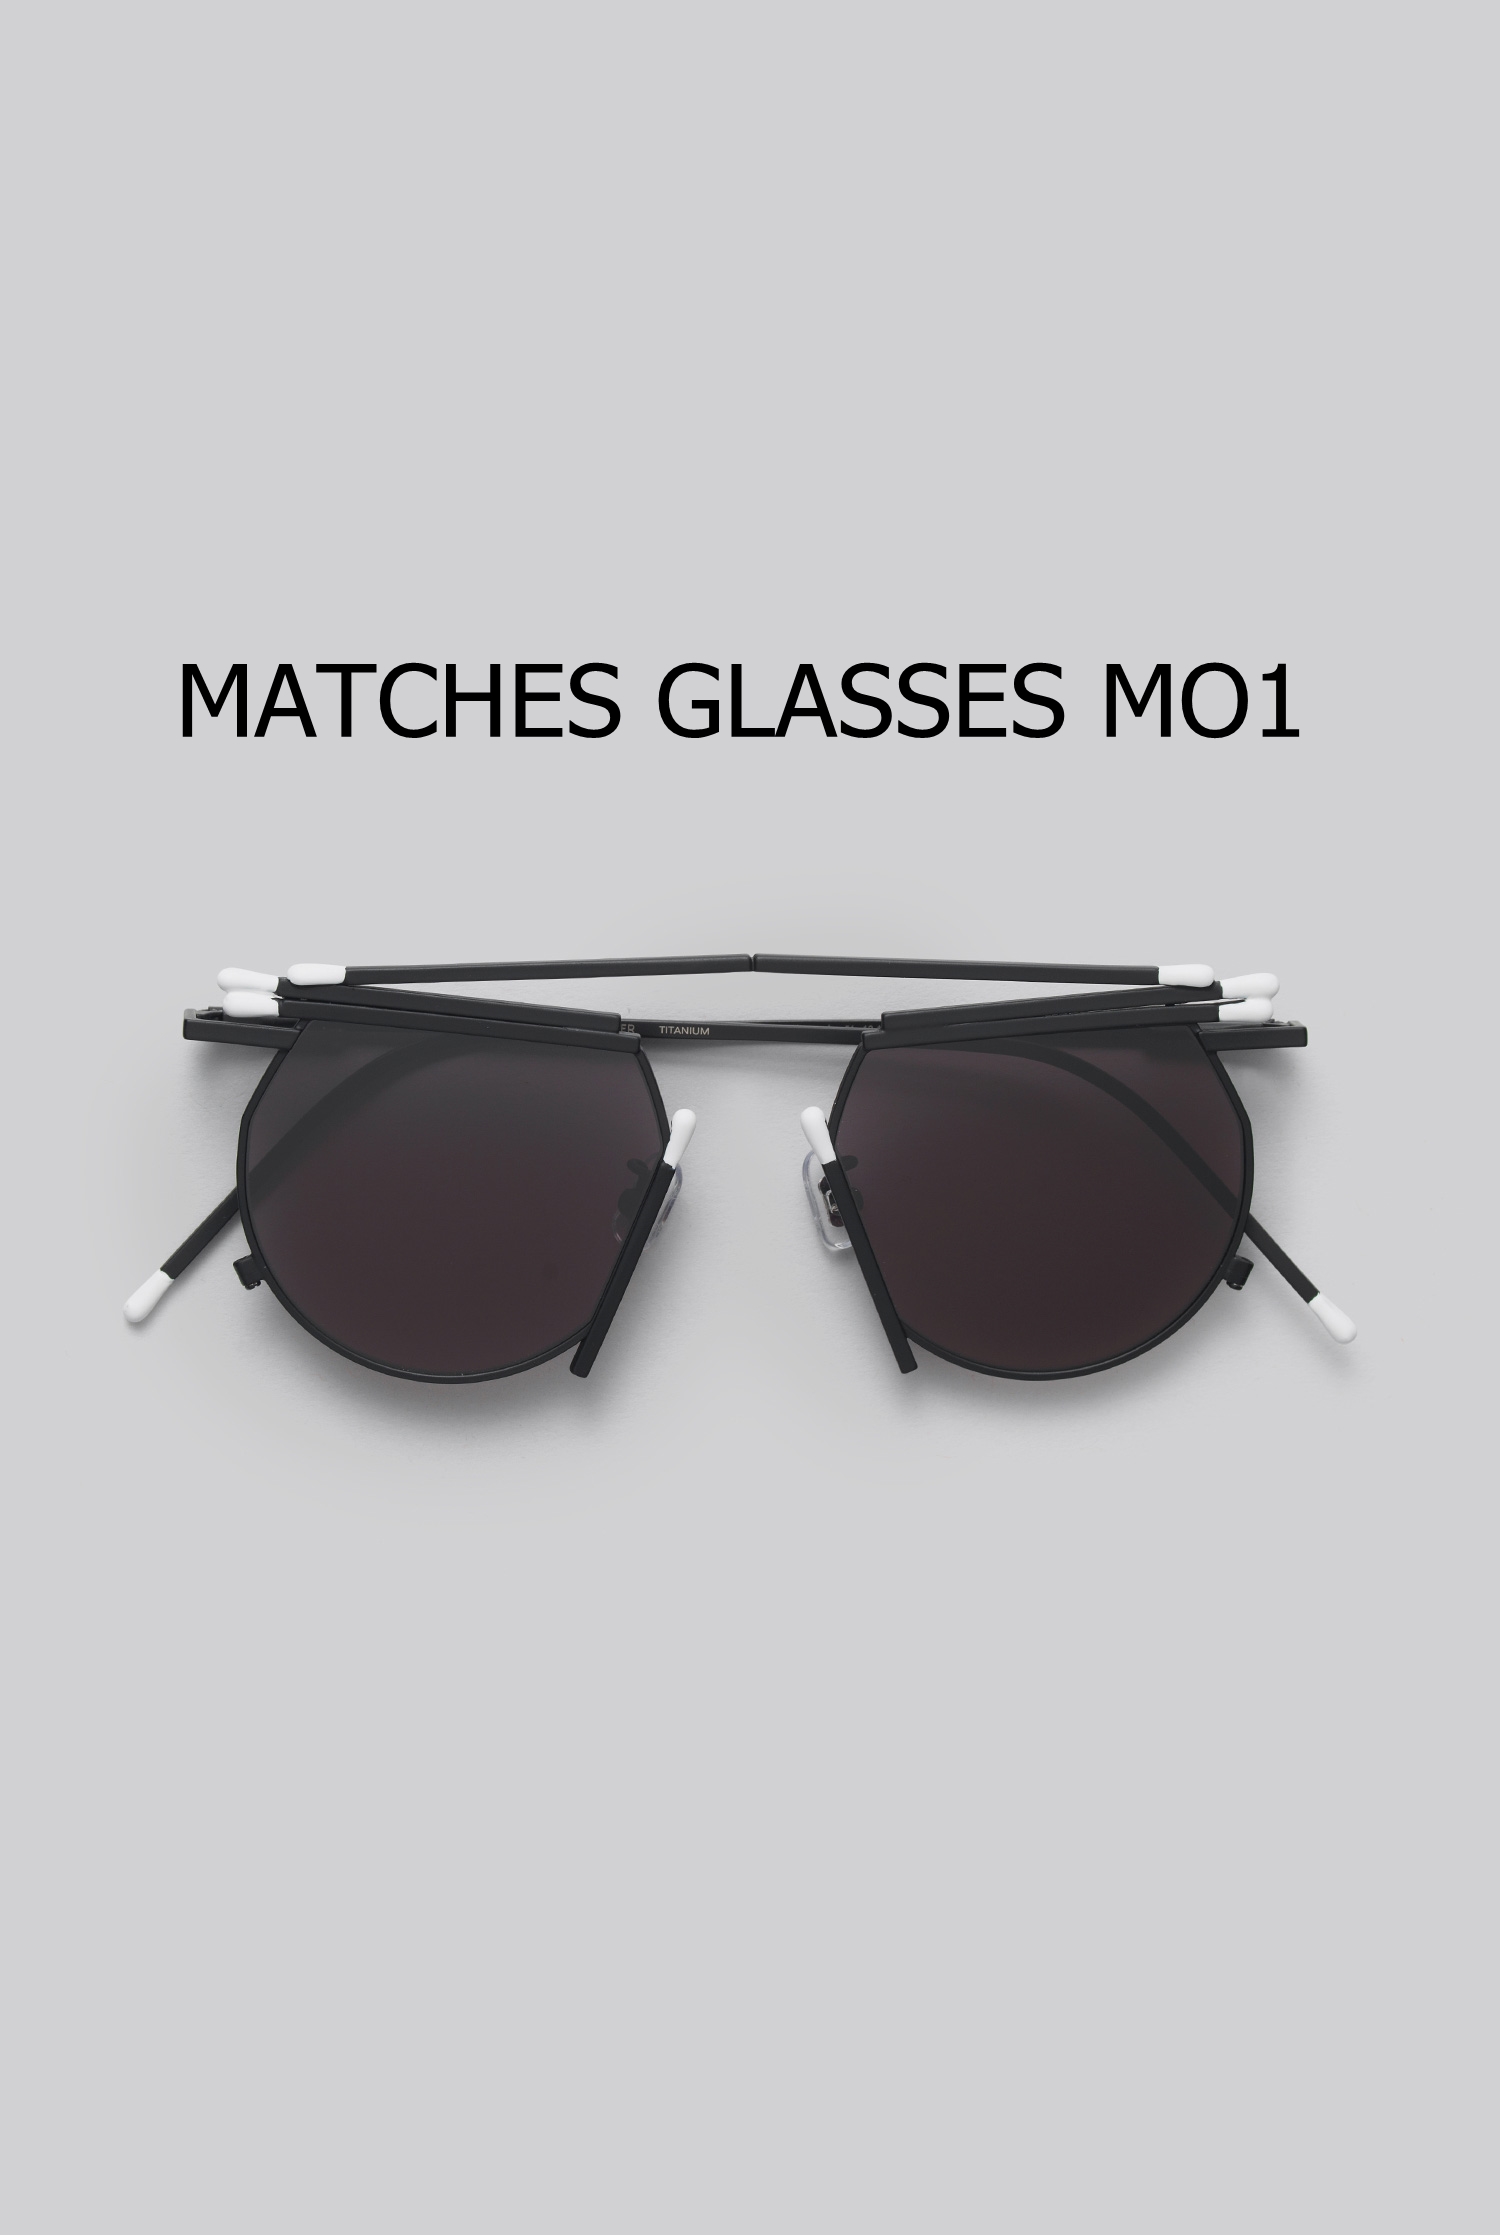 MATCHES GLASSES MO1